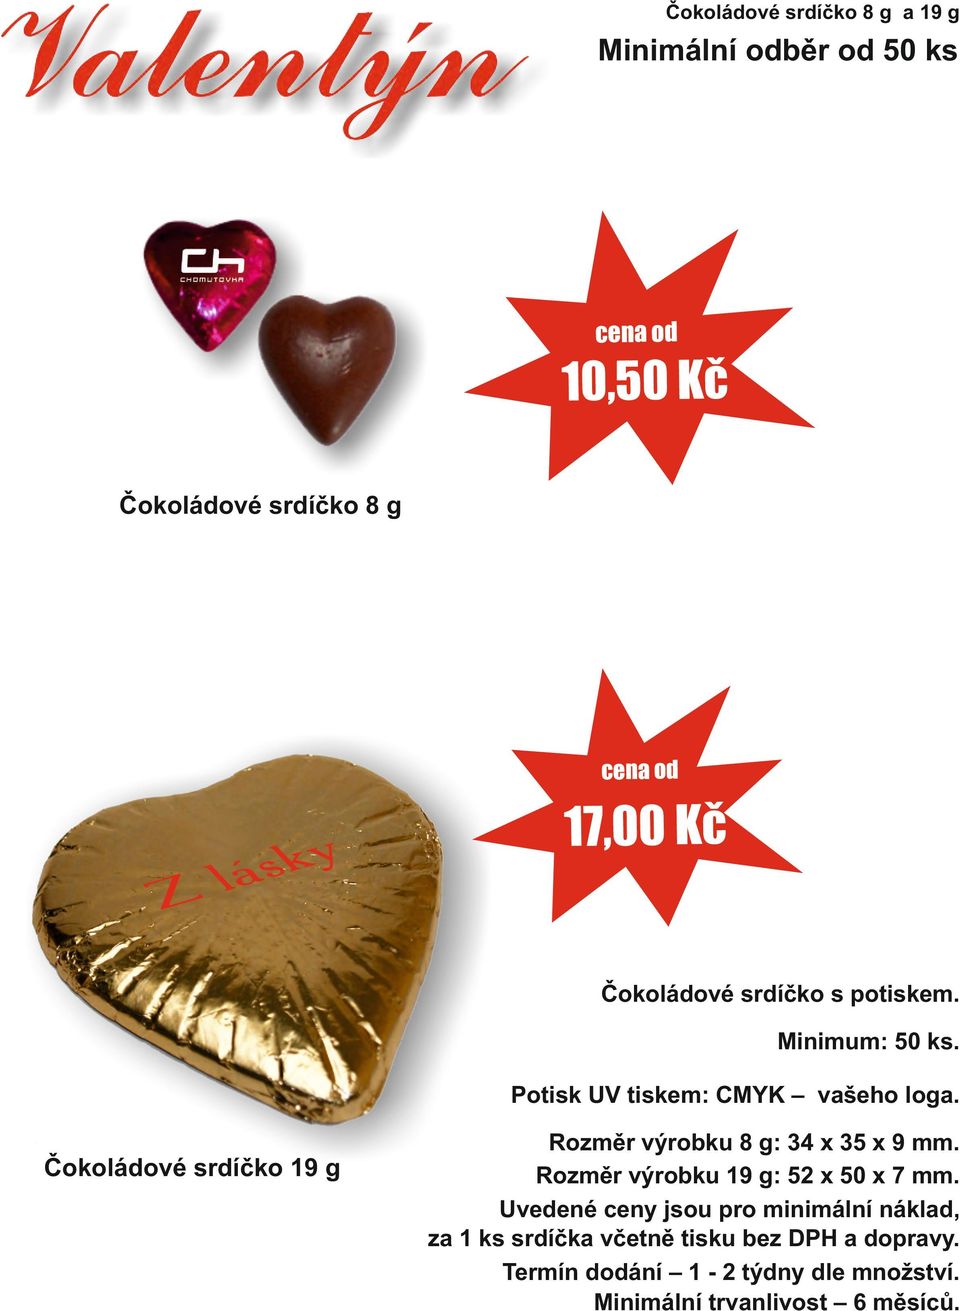 Čokoládové srdíčko 19 g Rozměr výrobku 8 g: 34 x 35 x 9 mm. Rozměr výrobku 19 g: 52 x 50 x 7 mm.